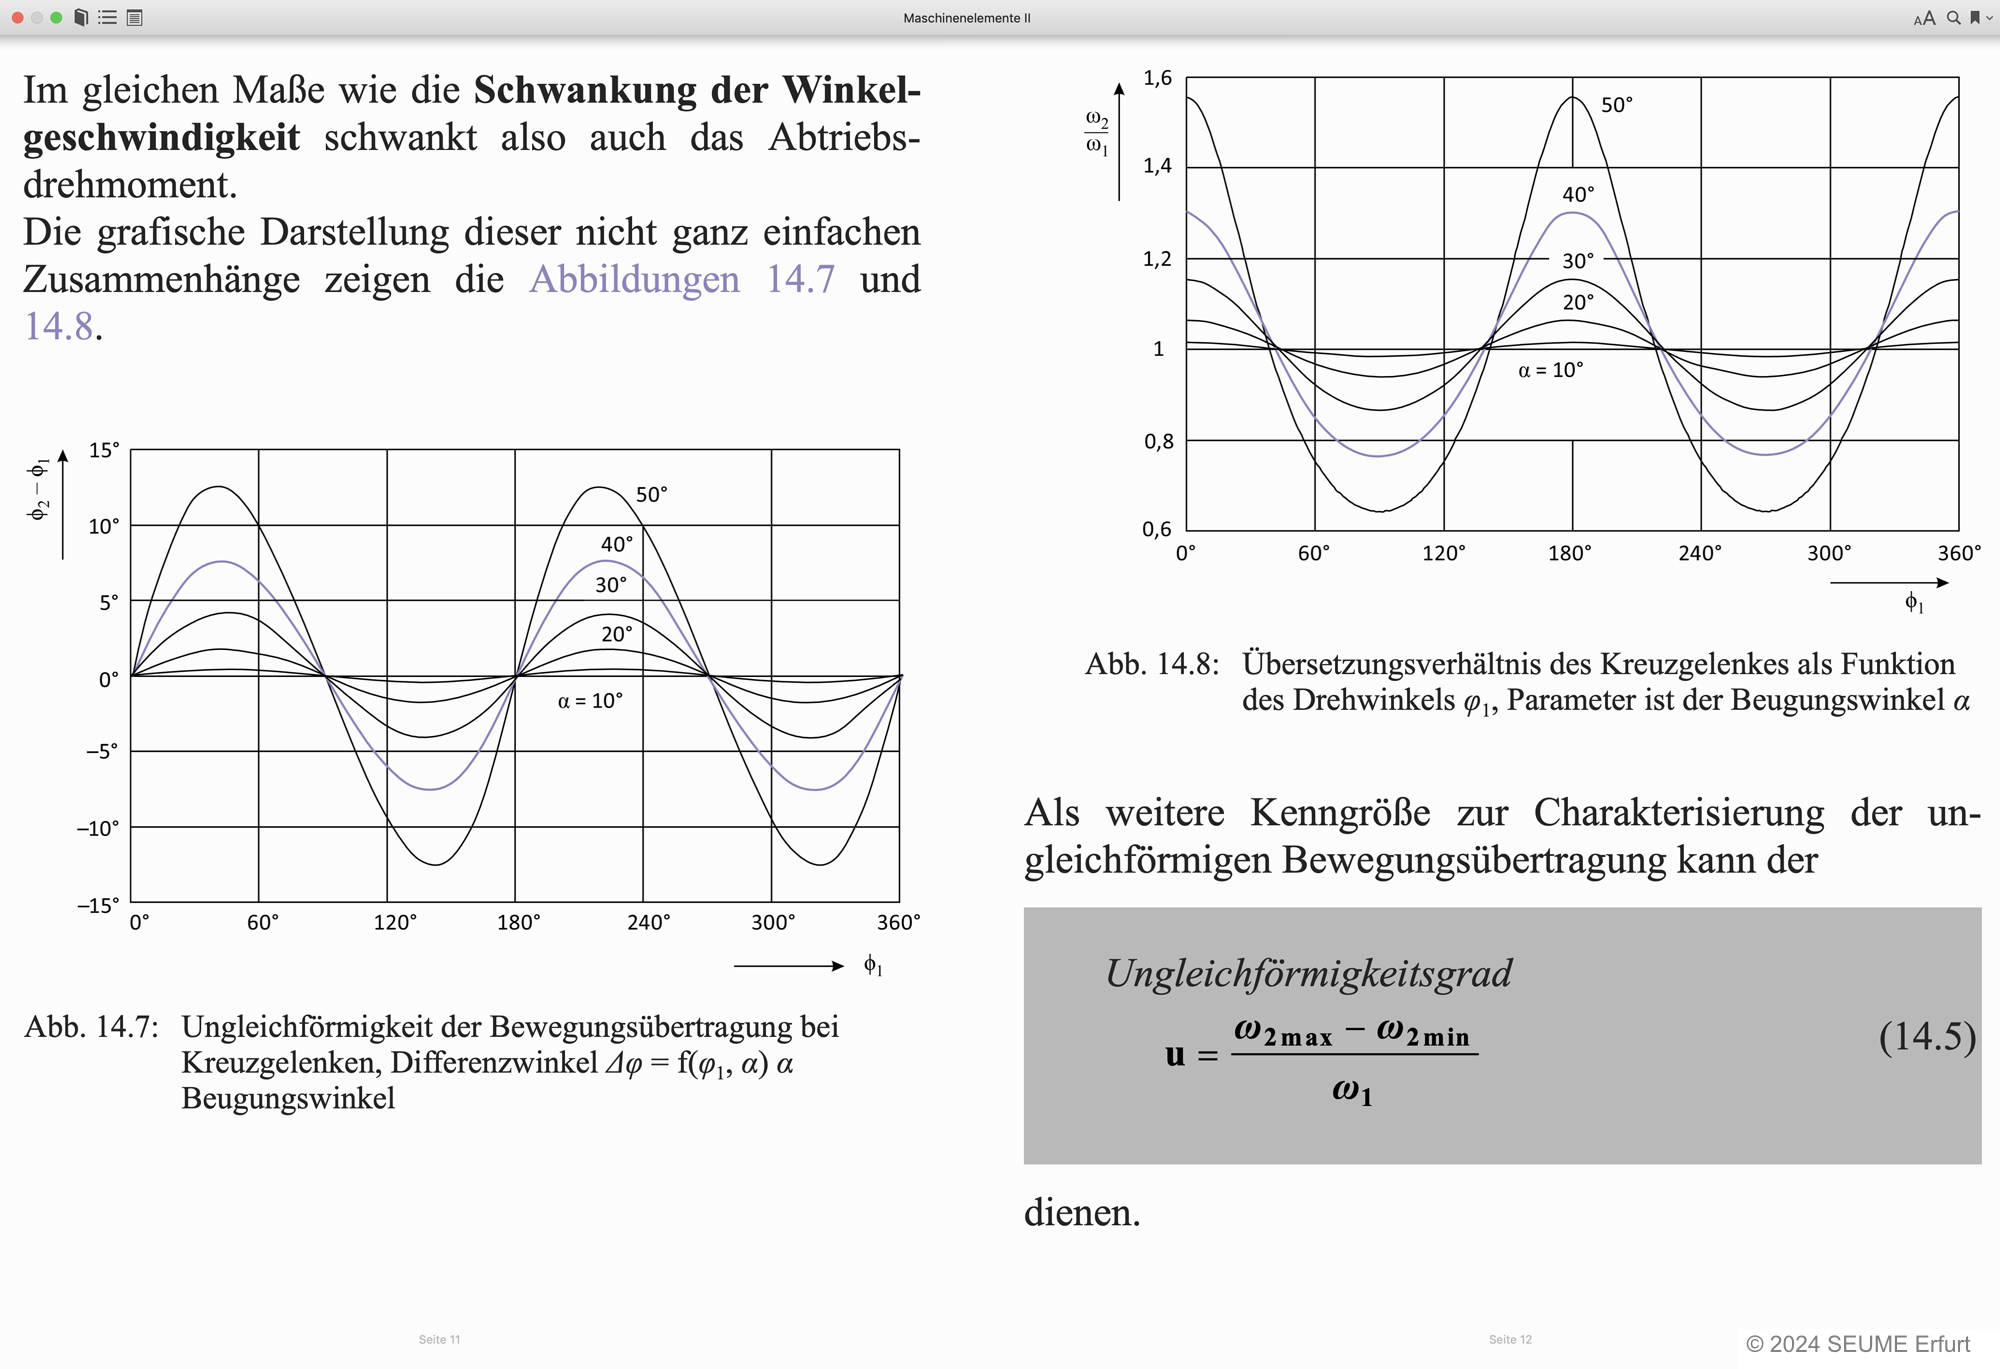 Bildschirmfoto eines E-Books mit zwei Graphendarstellungen,
    einer Formel und Text.